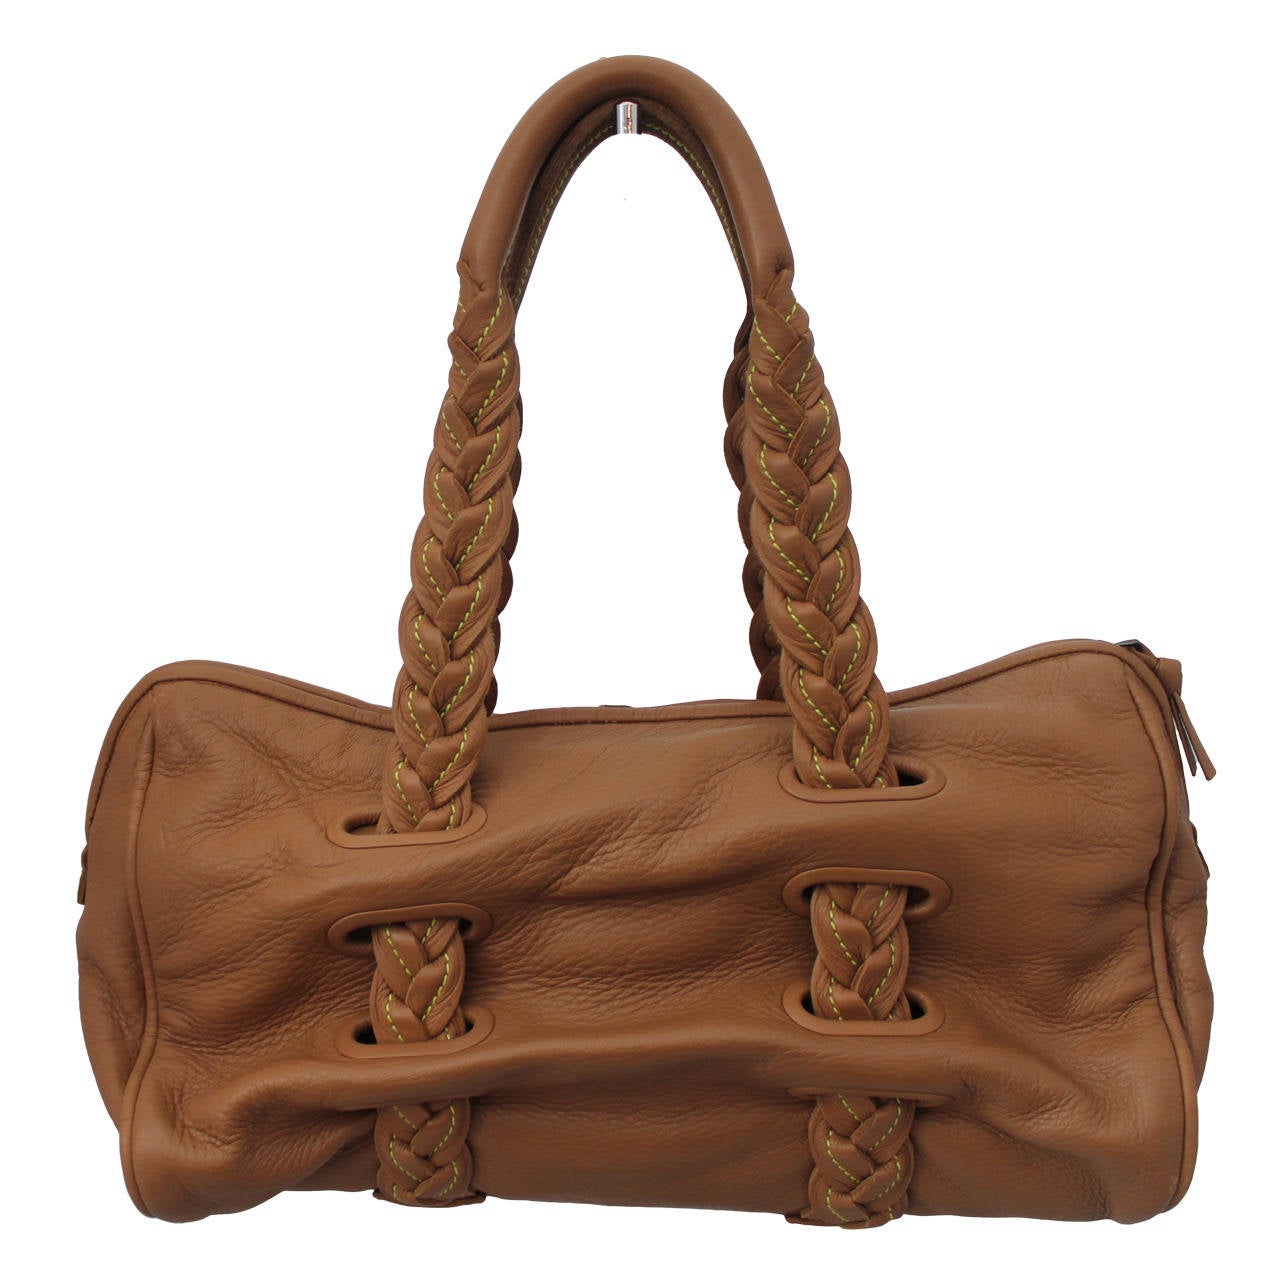 Bottega Veneta Luggage Leather & Yellow Stitching Shoulder Bag - rt. $2680